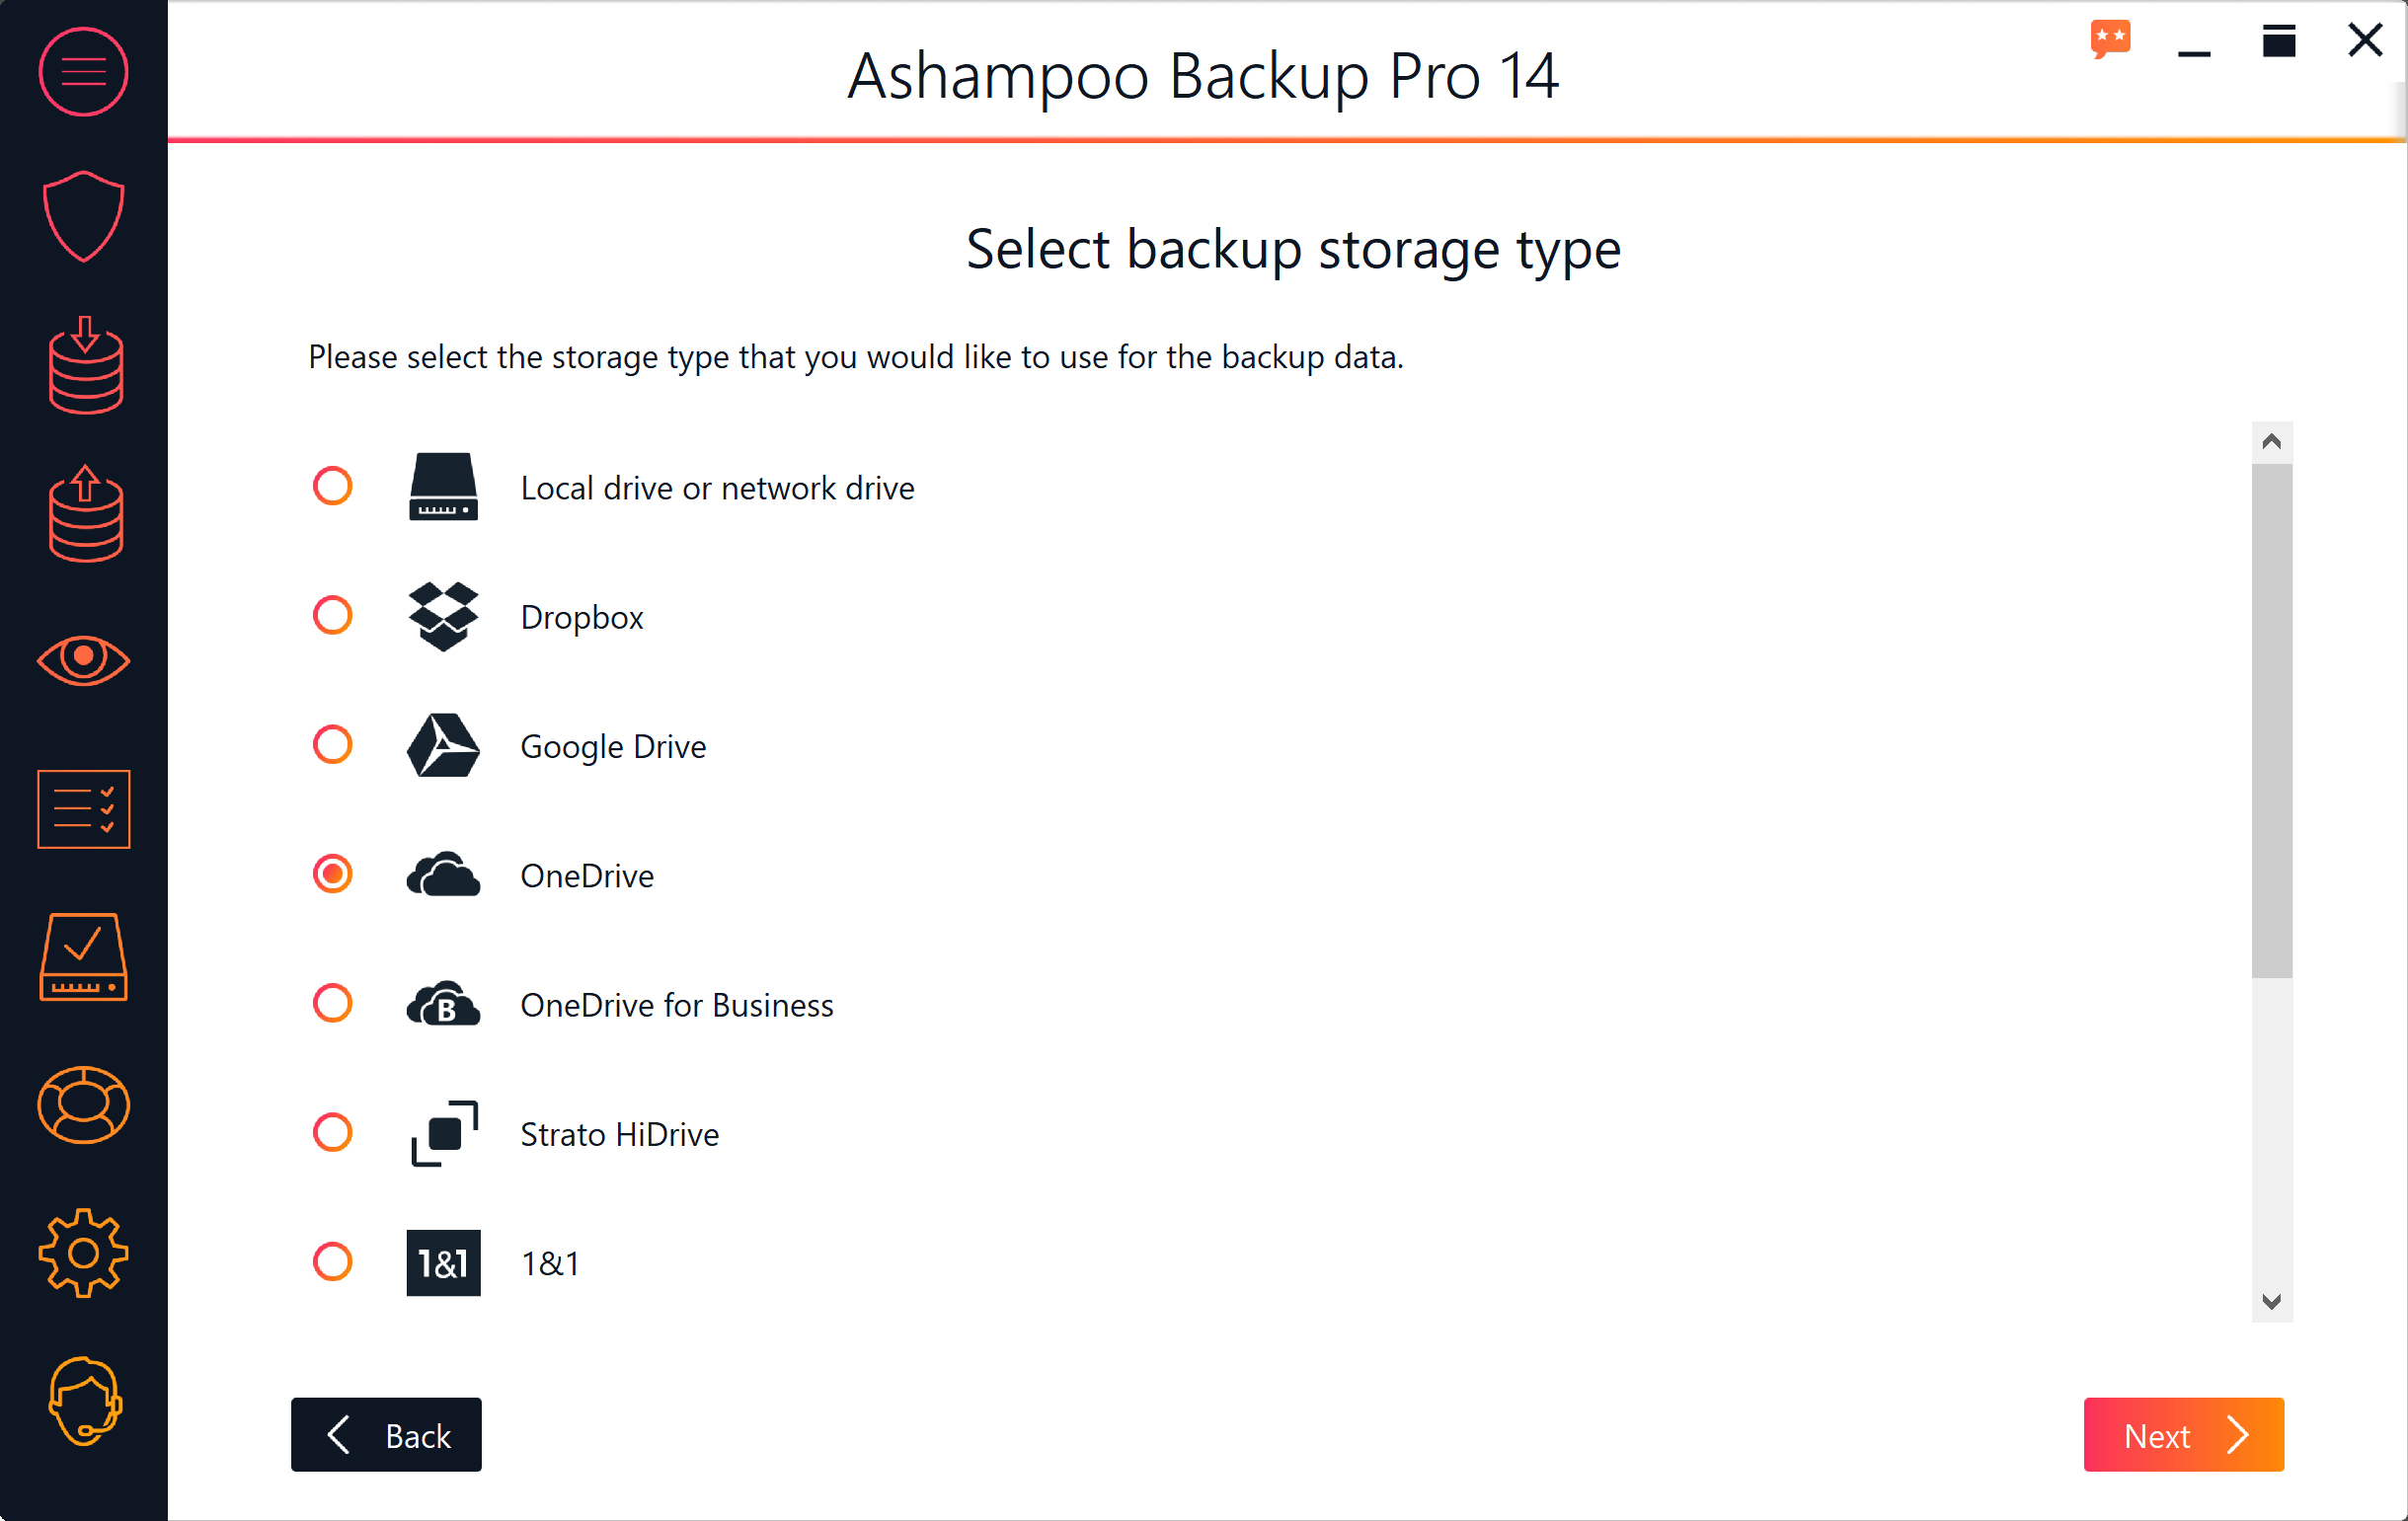 Ashampoo BackUp Pro 14 Activation Key